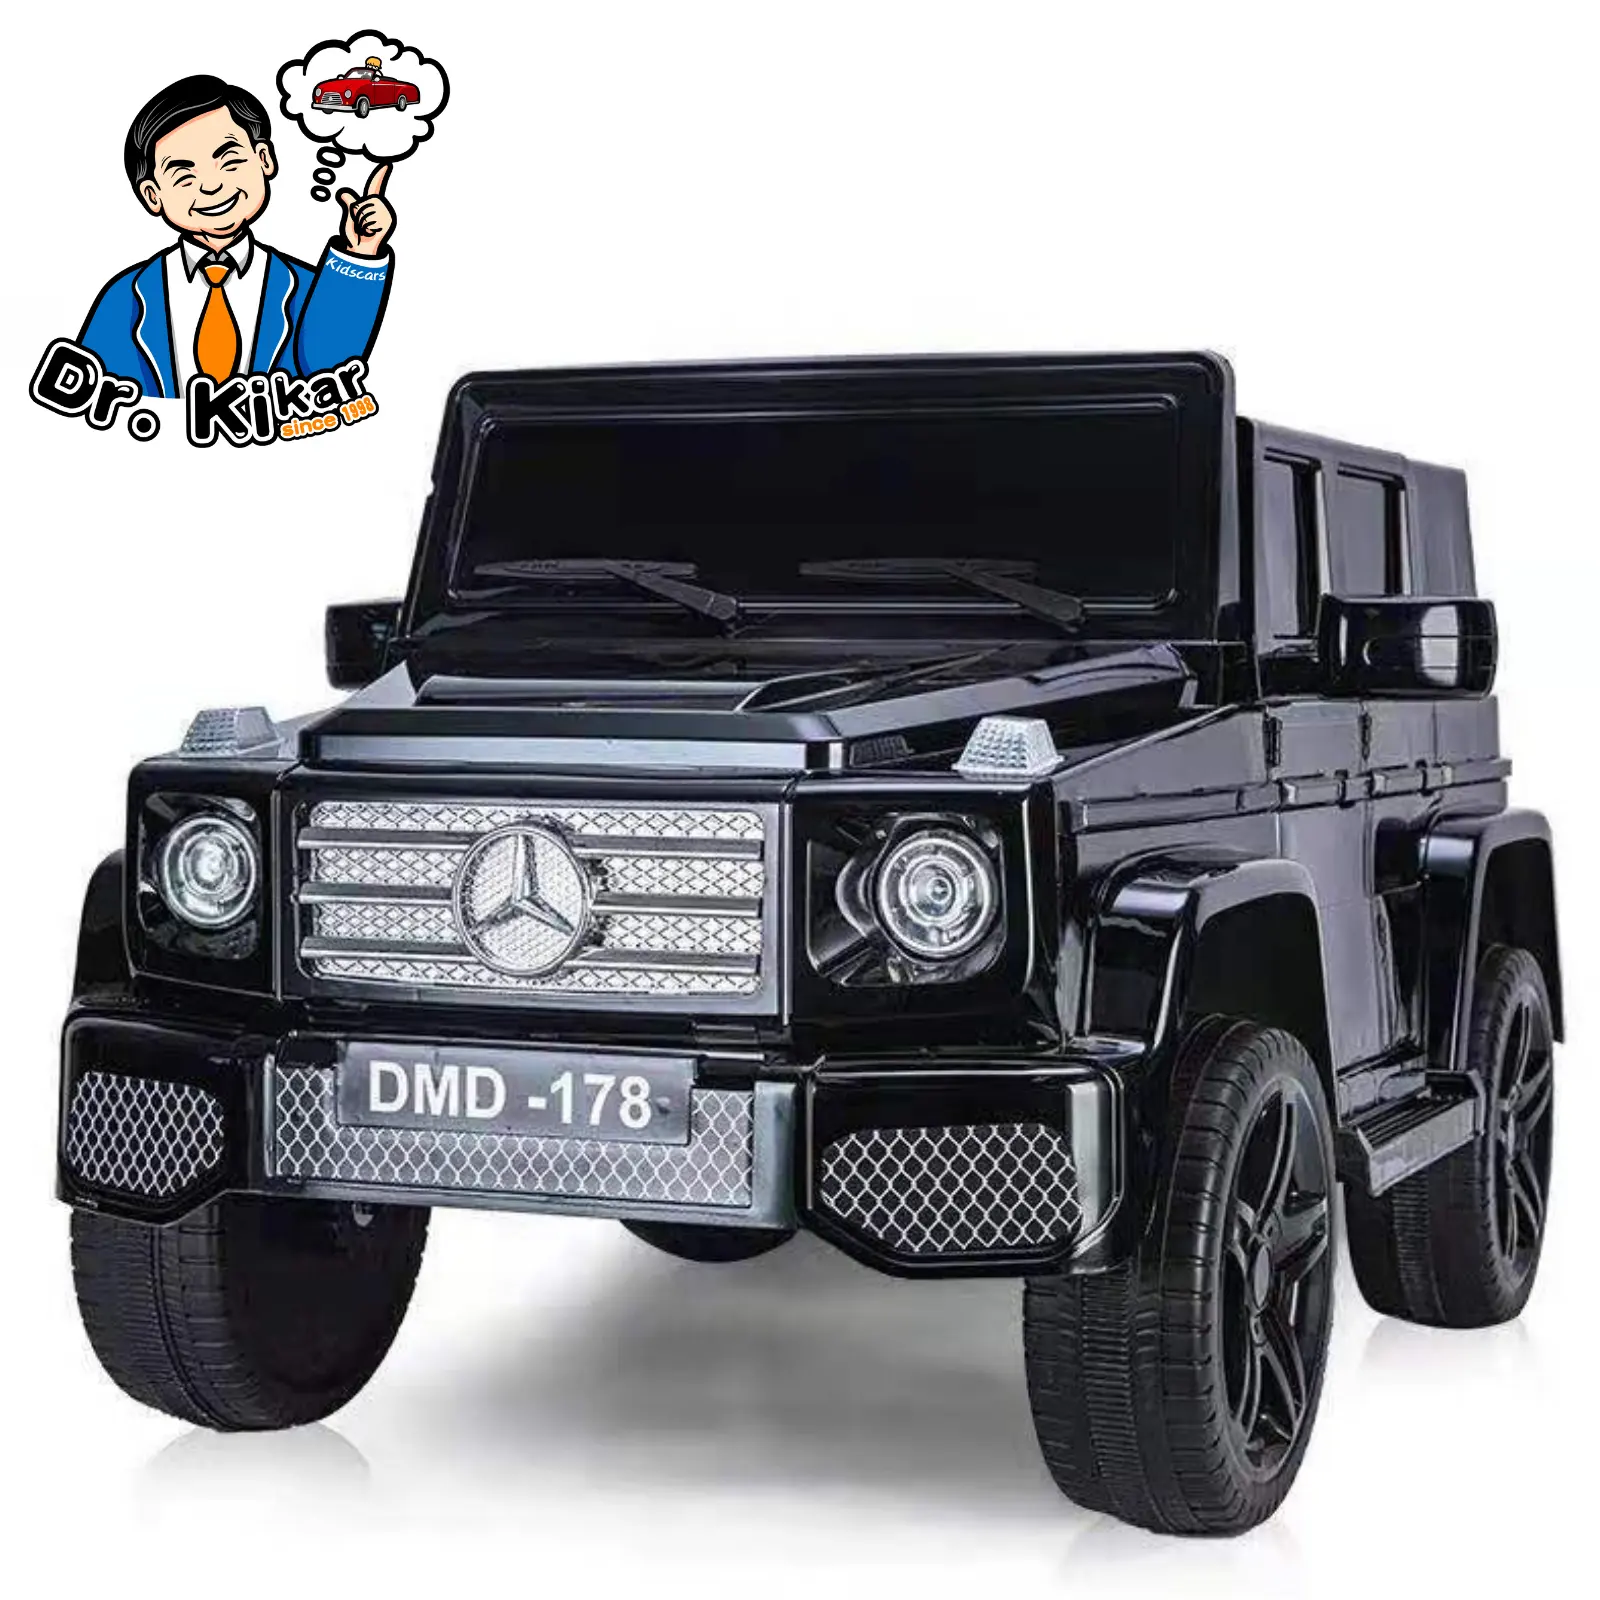 Lorda 12v carro de brinquedo com quatro rodas, carro elétrico com carros para crianças, vermelho, cinza e preto